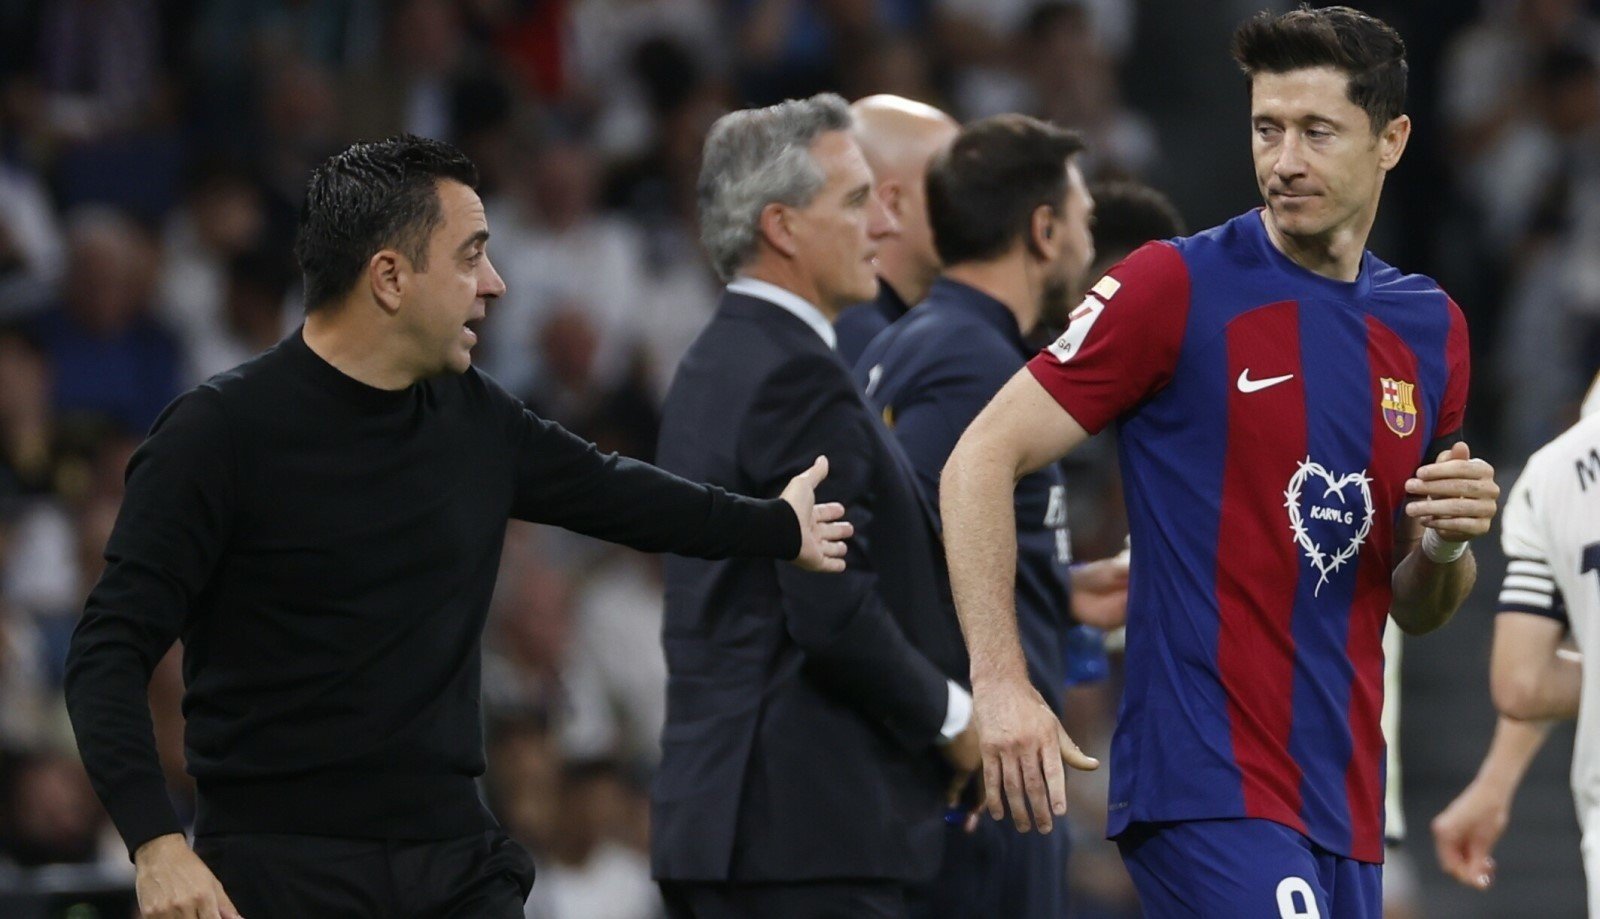 Xavi zostaje w Barcelonie! Laporta ostatecznie przekonał trenera do przedłużenia kontraktu